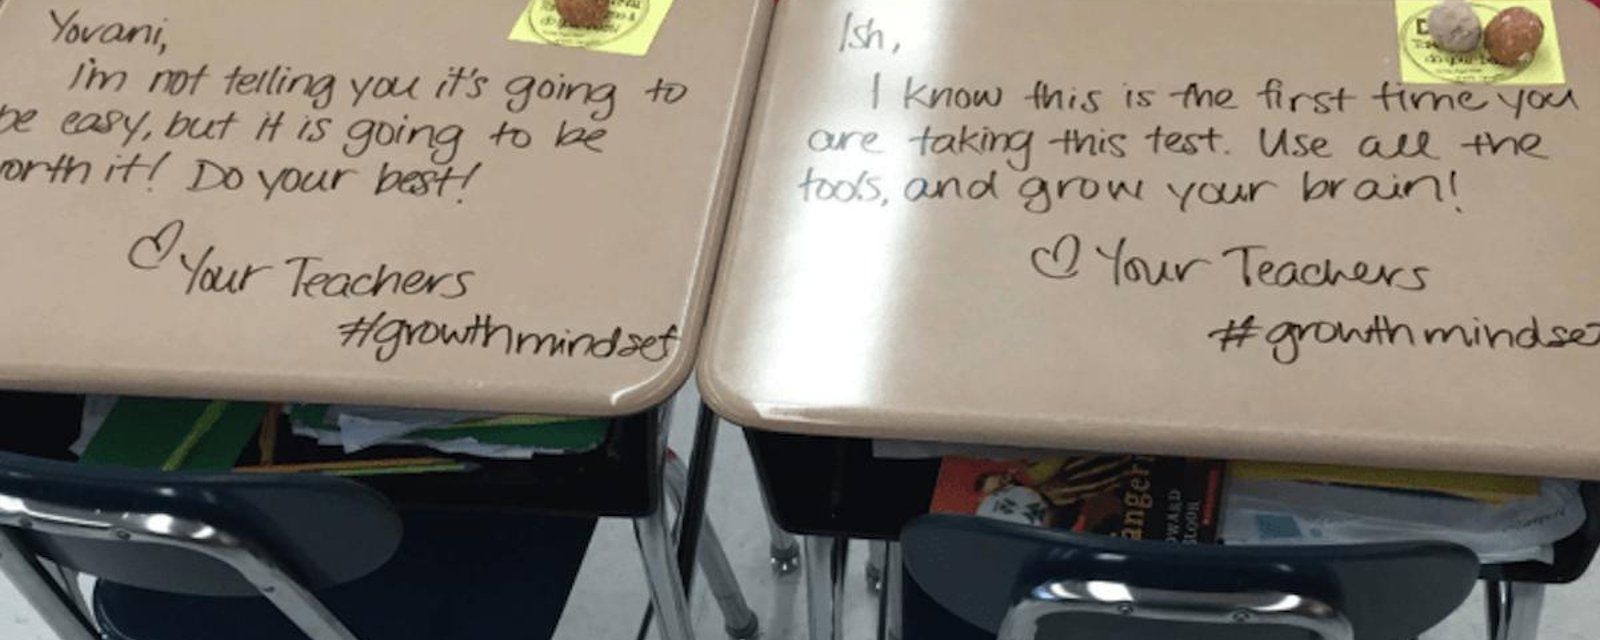 Une enseignante a eu une idée merveilleuse pour motiver ses élèves!